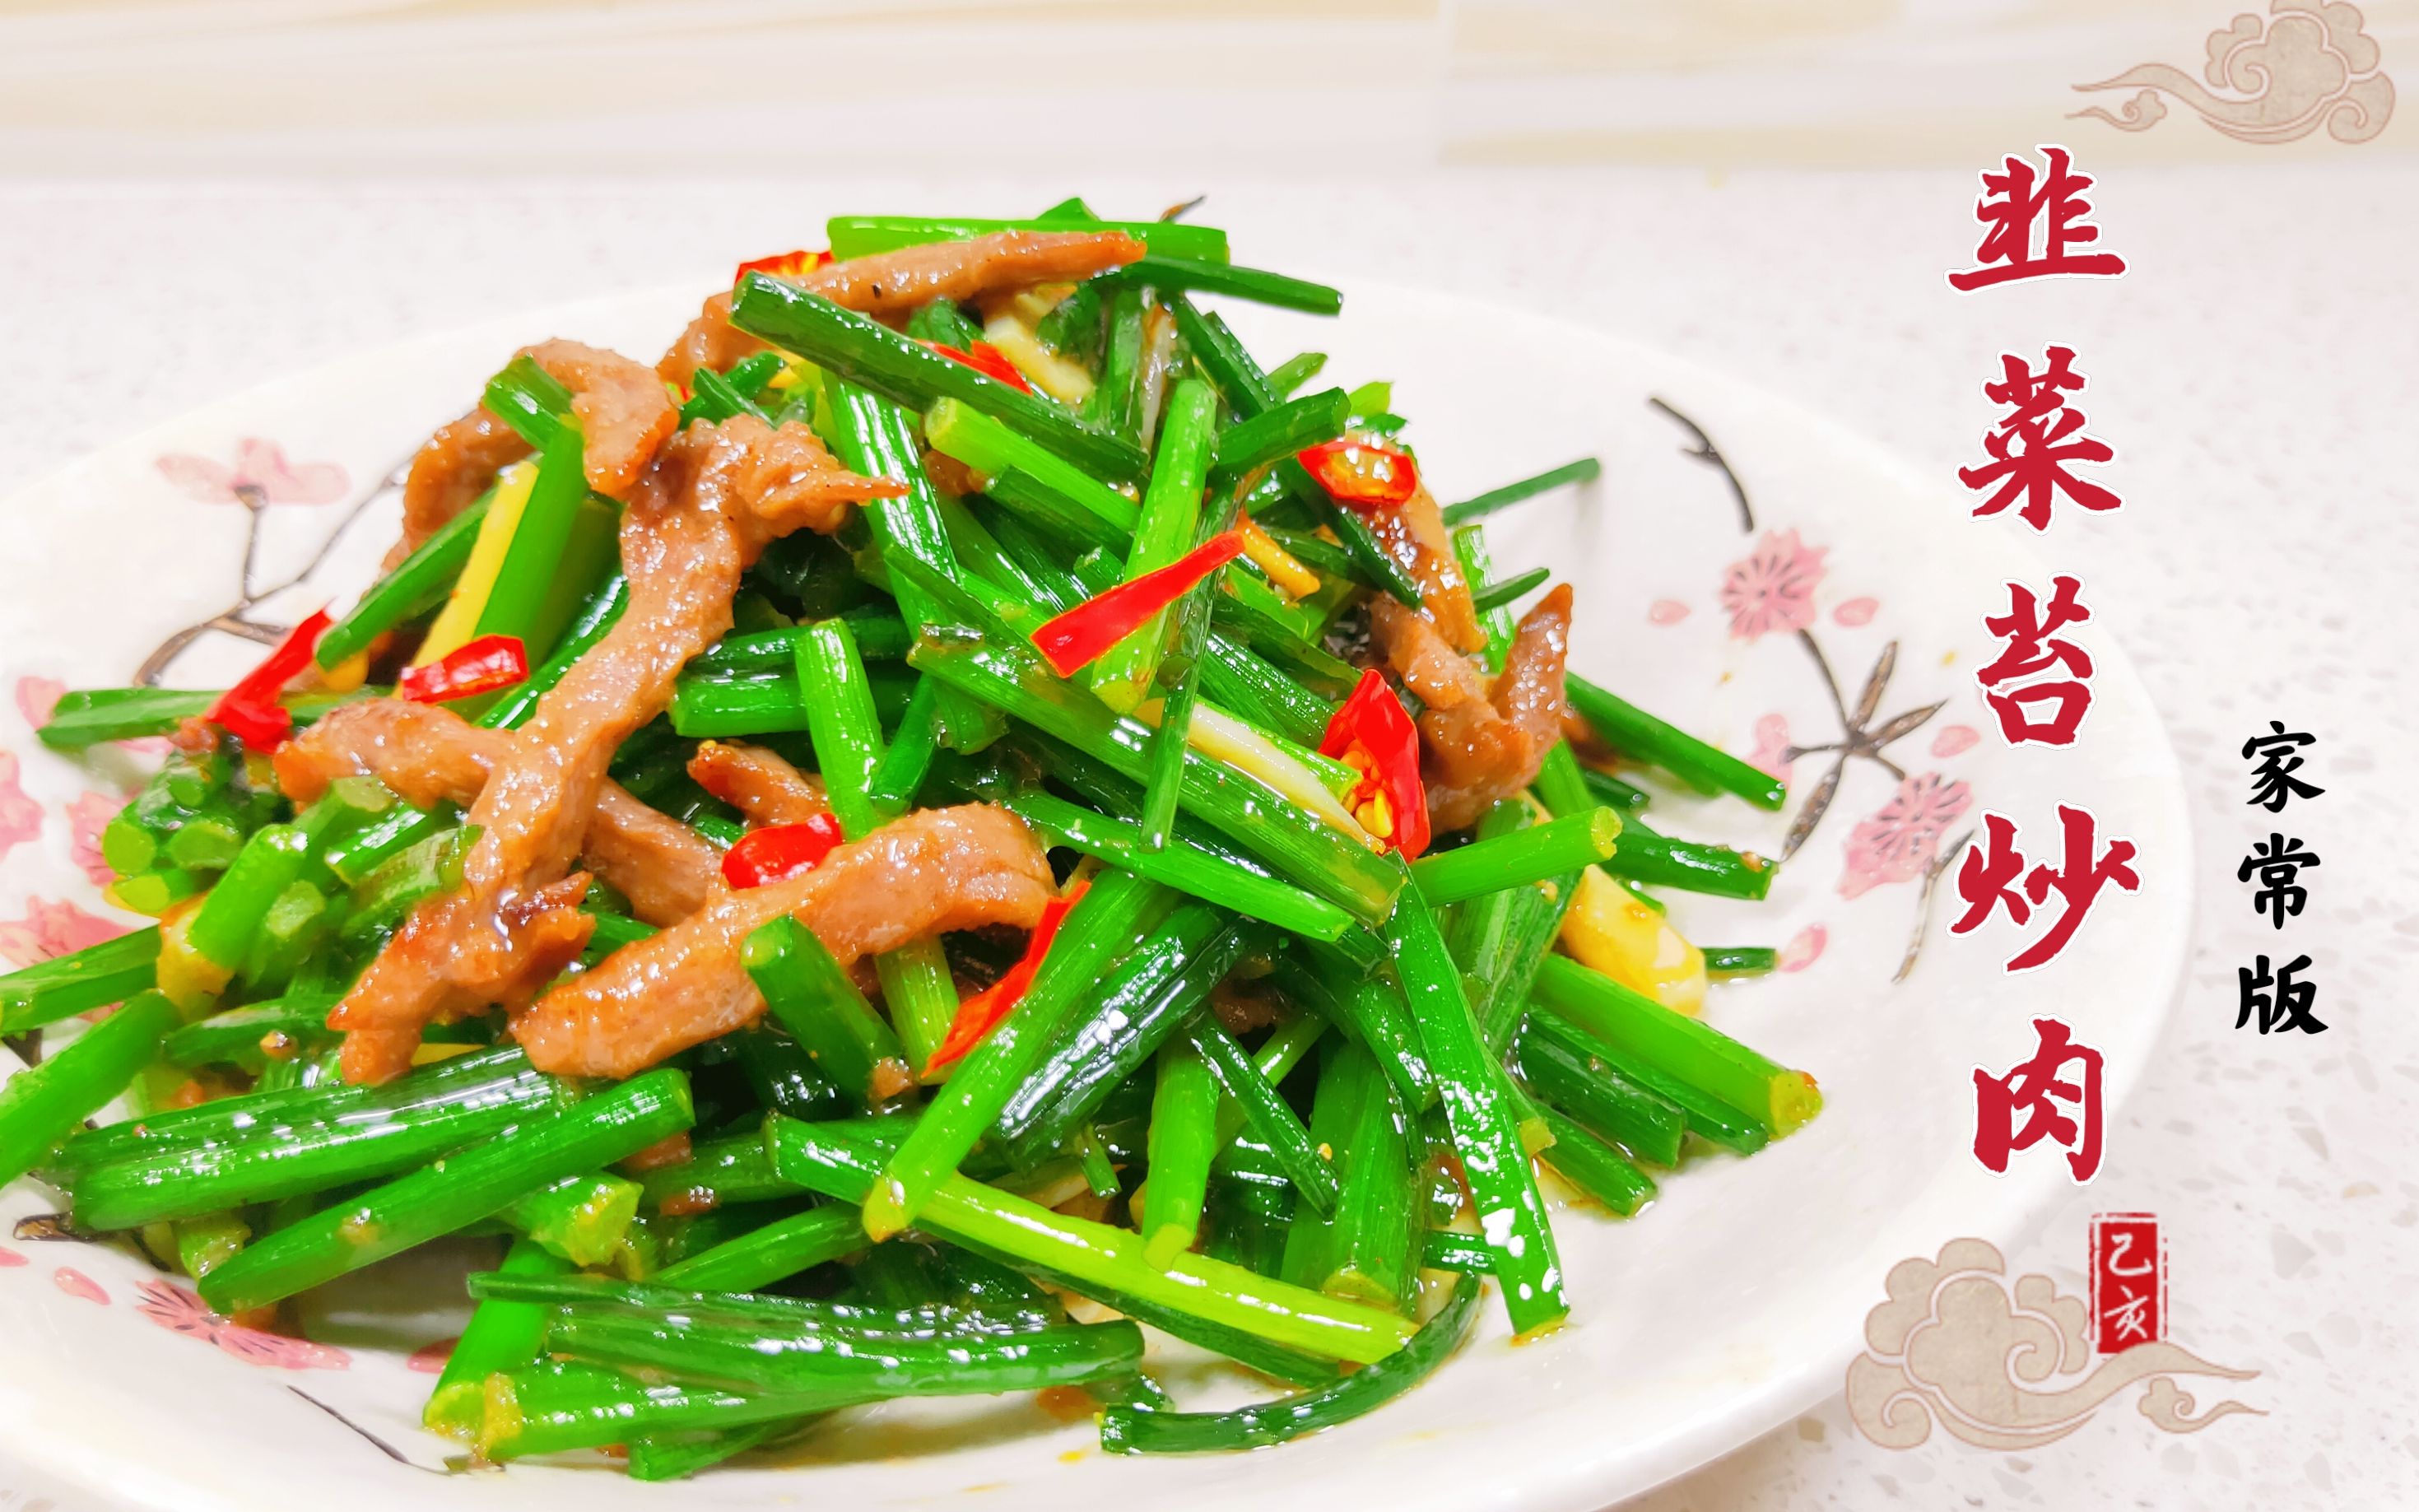 韭菜苔炒肉在家怎么做?肉嫩滑爽韭苔鲜嫩,营养美味又下饭